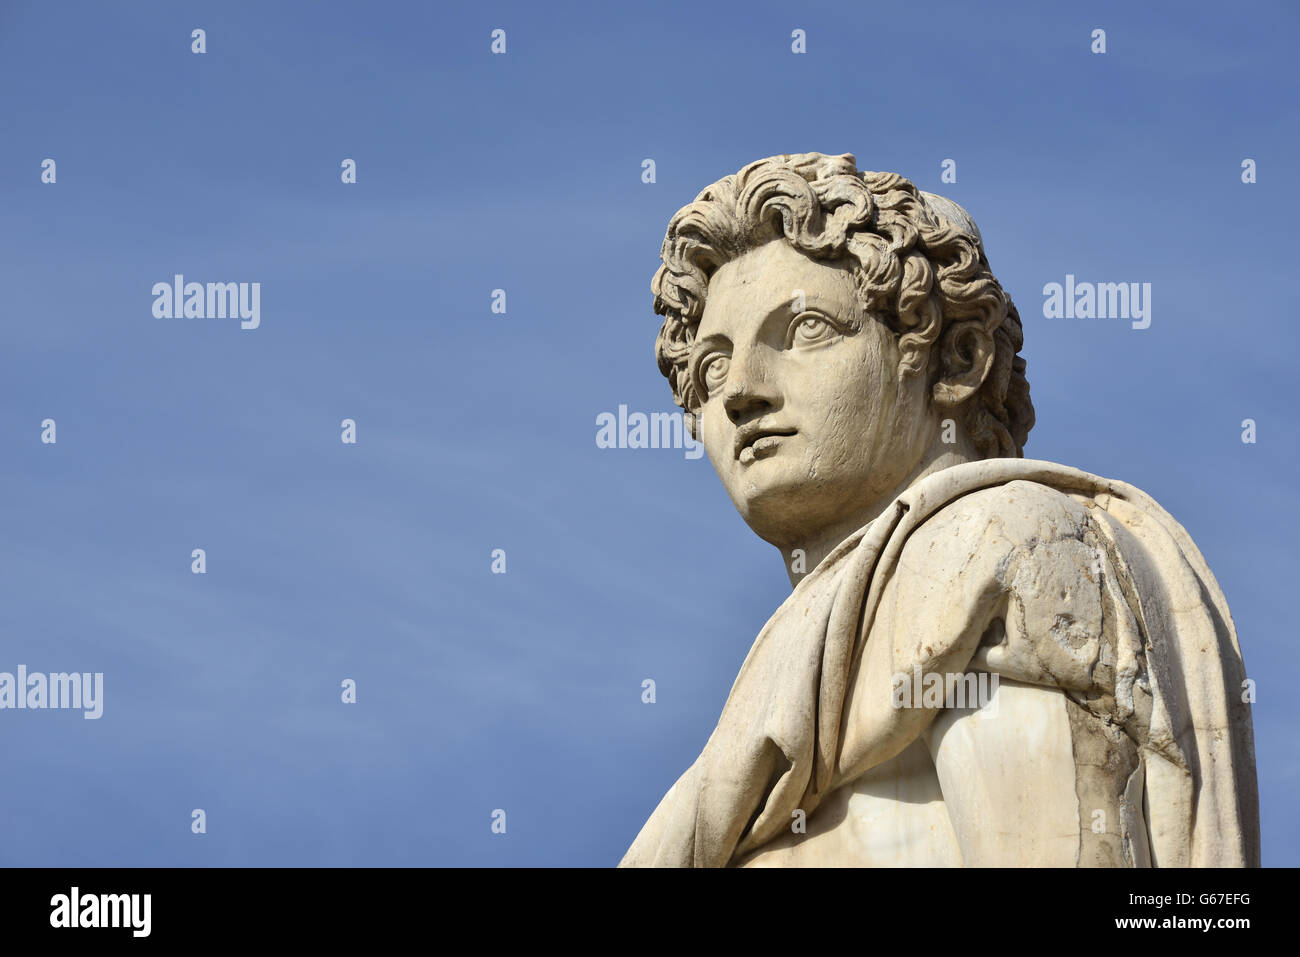 Antica statua romana di Dioskouri alla sommità del colle Capitolino Scala e balaustra, nel centro di Roma (I secolo a.C.) Foto Stock